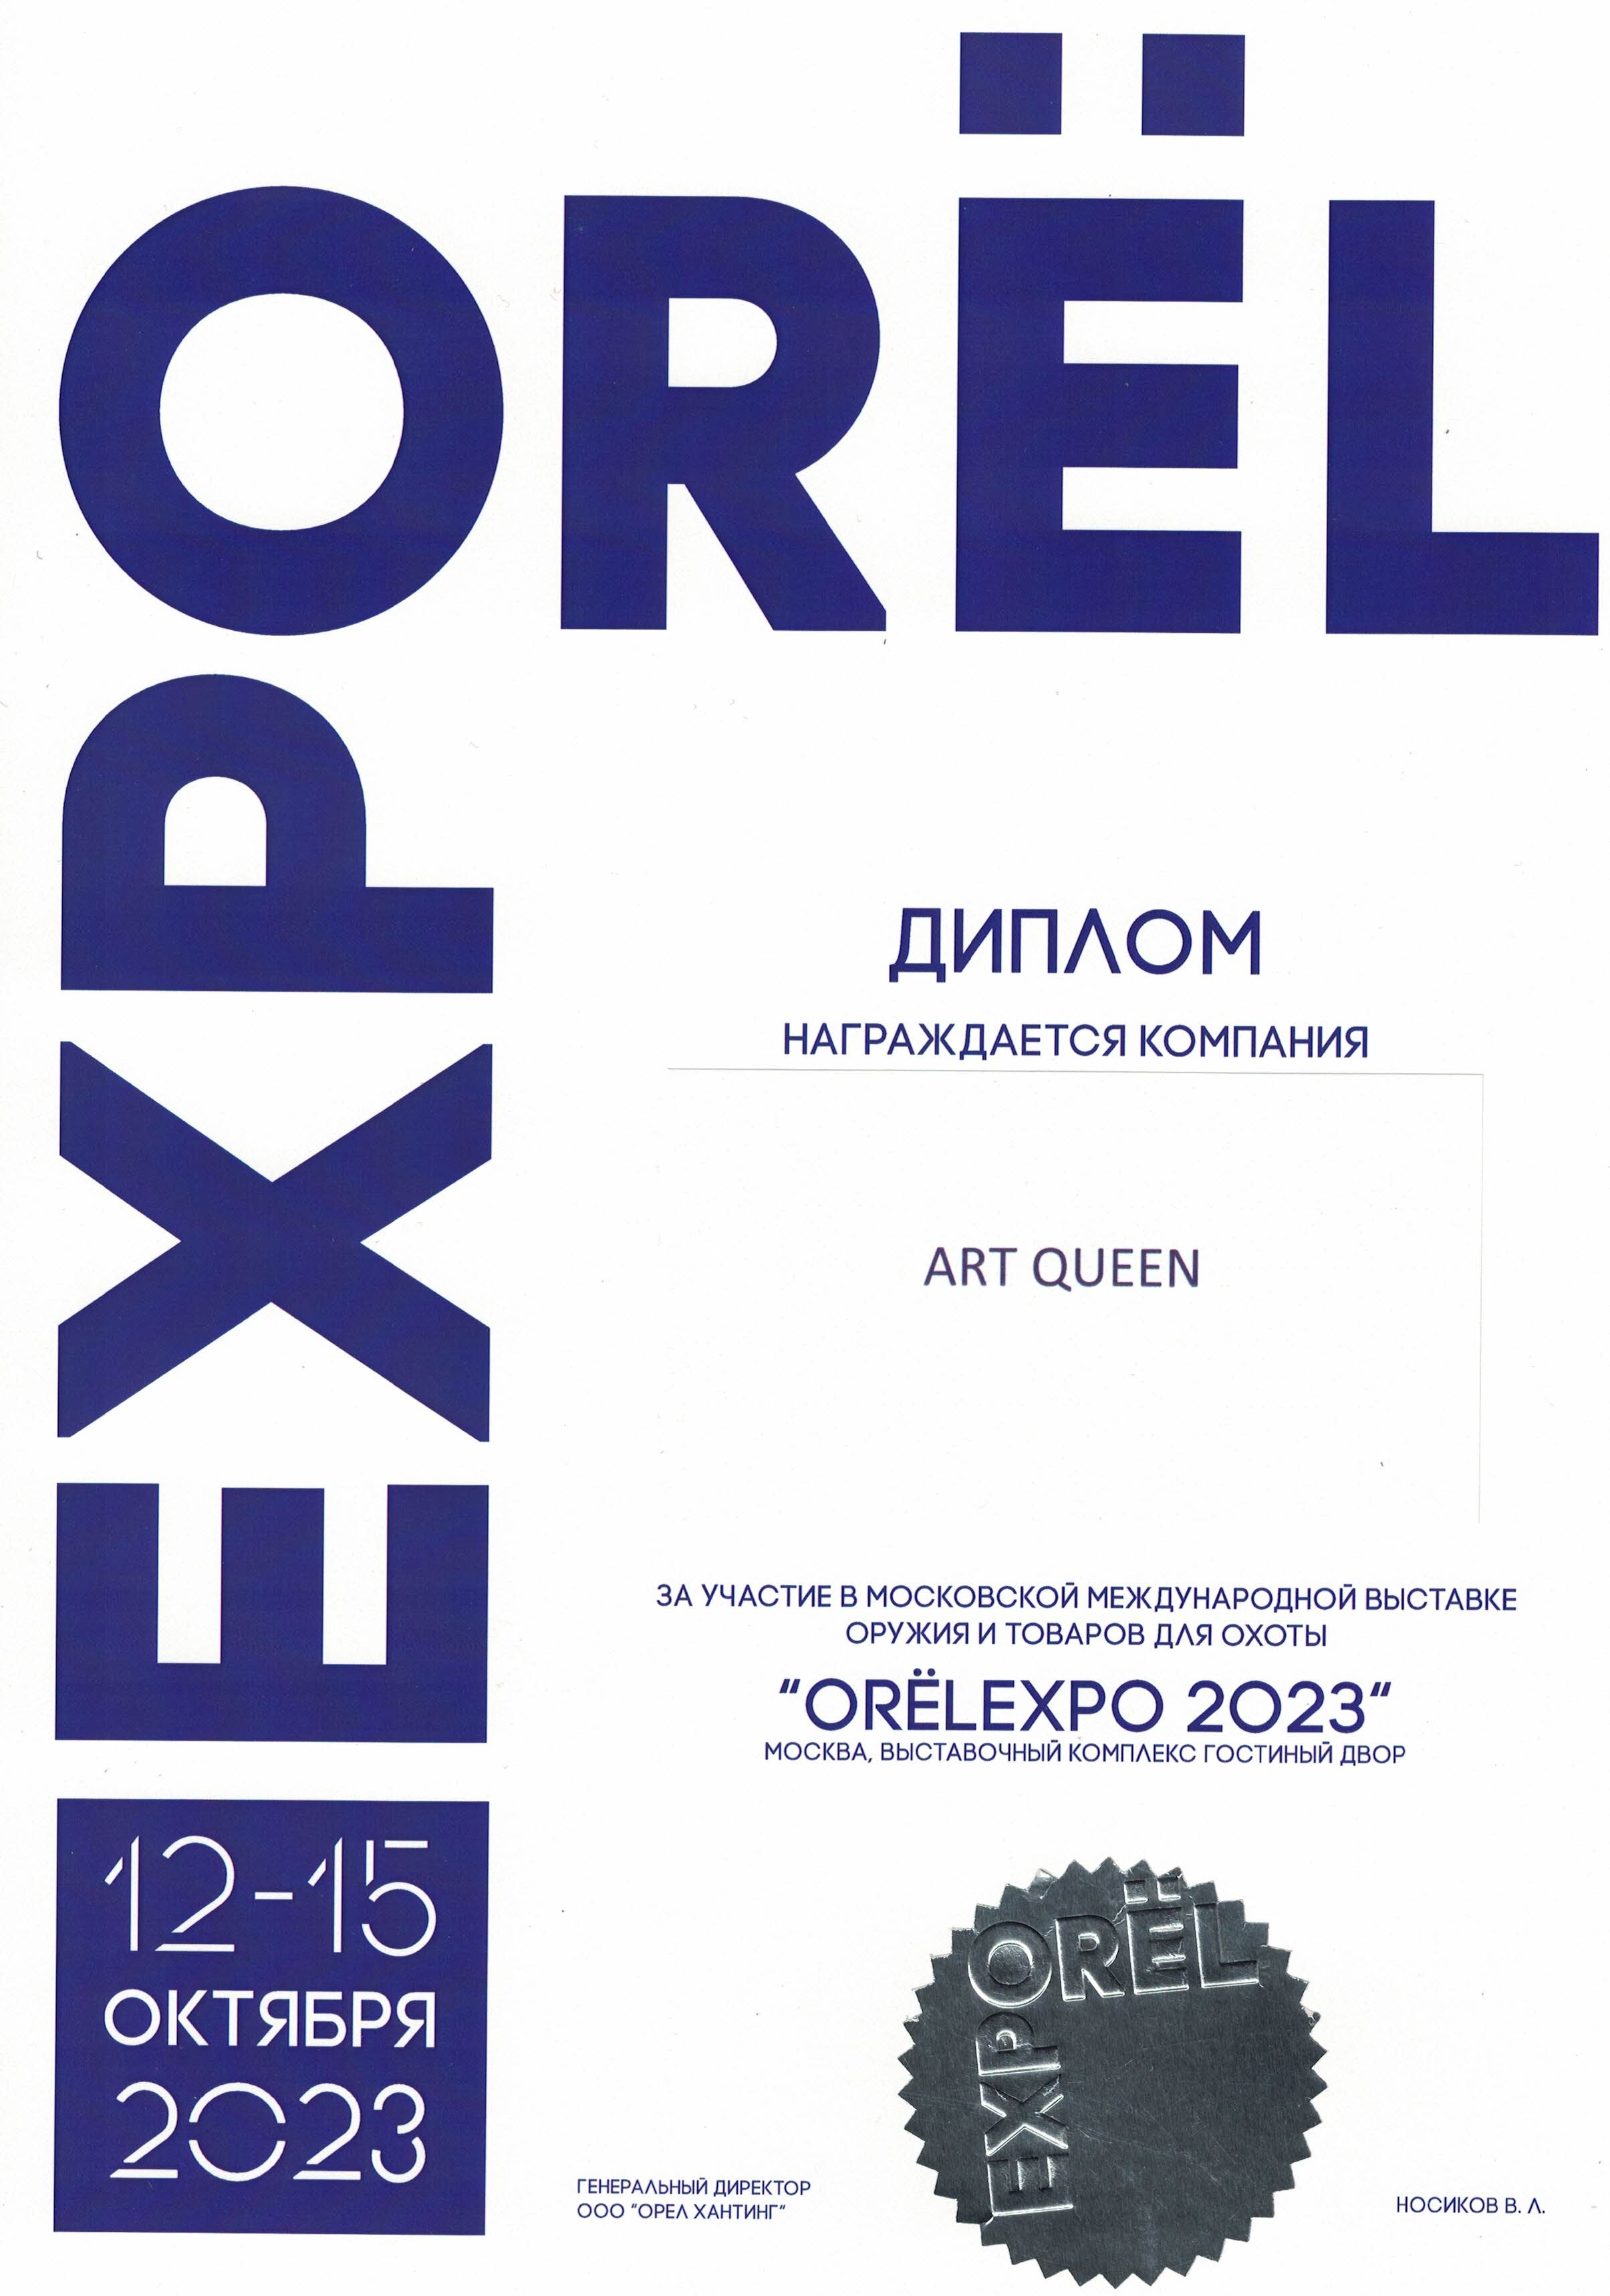 Диплом ART QUEEN shop выставка OREL EXPO 2023 Москва.